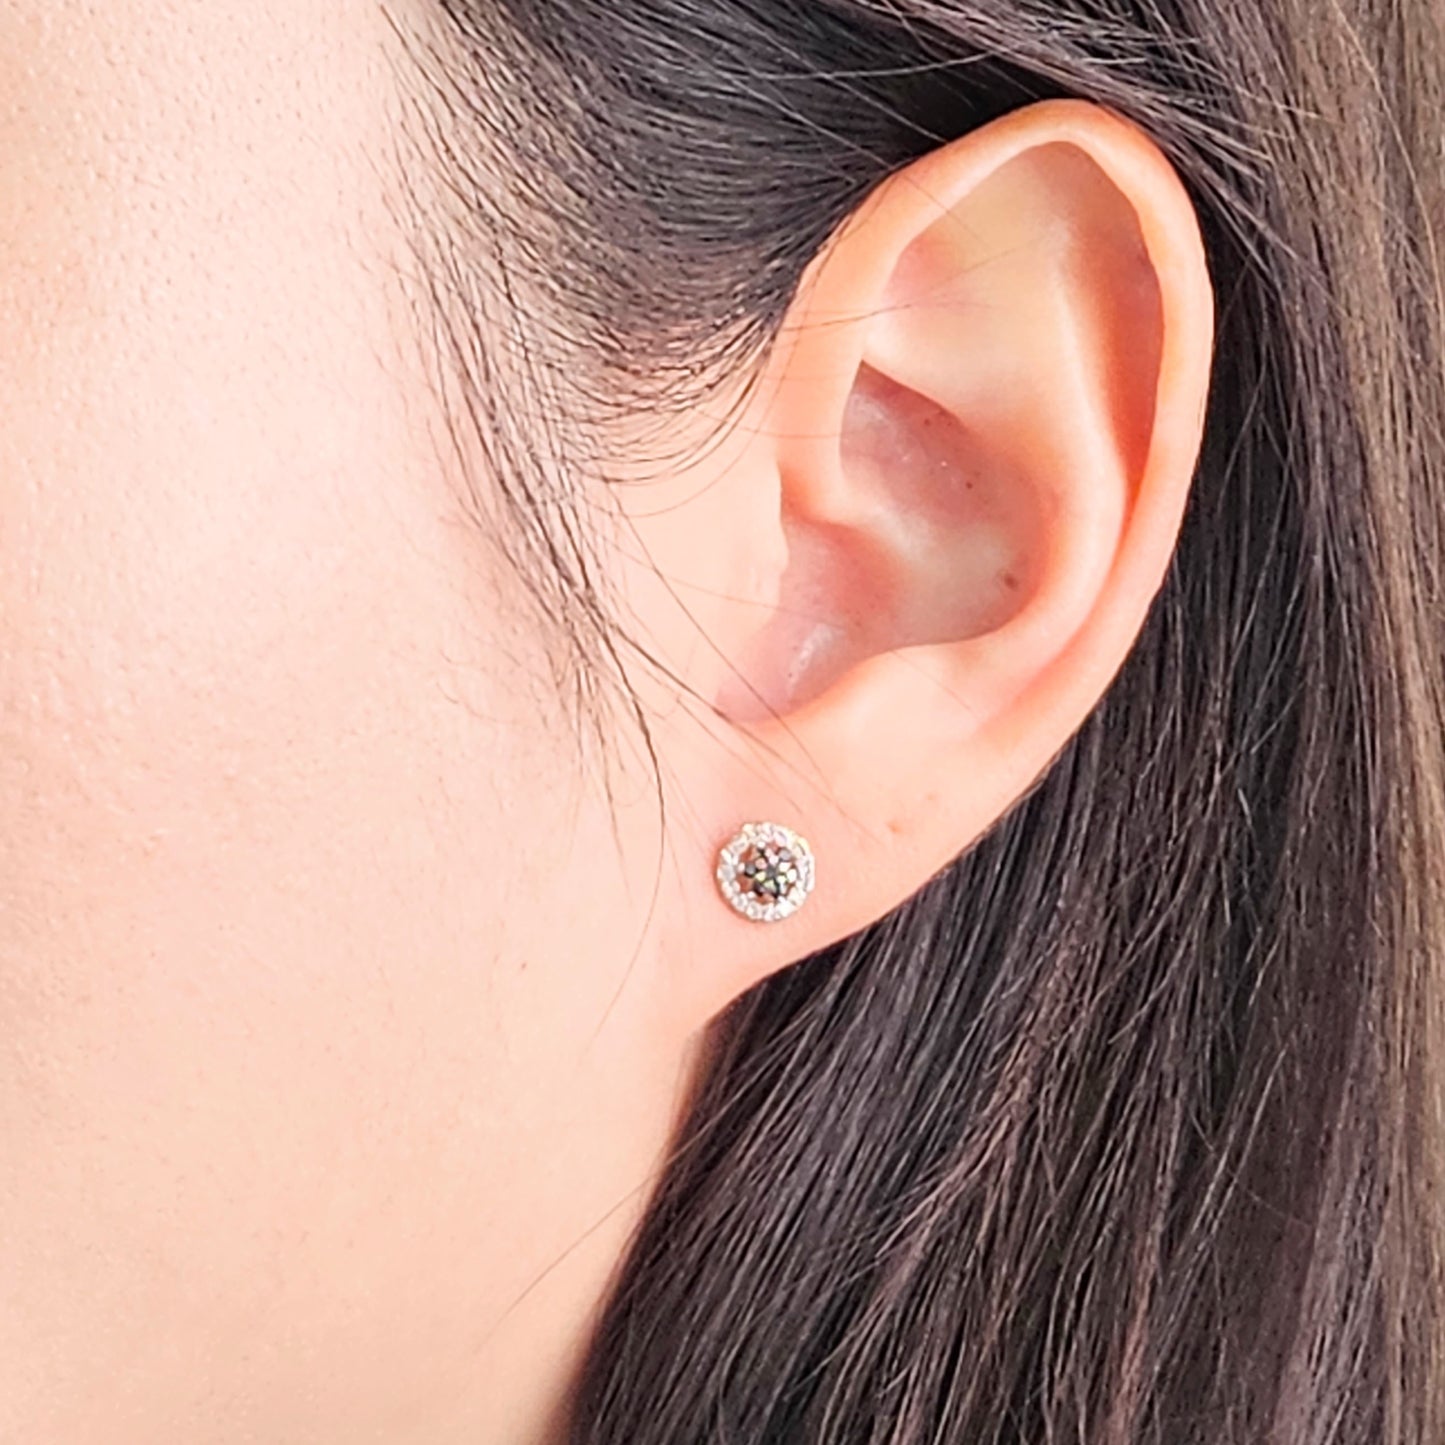 Black & White Diamond Flower Earrings / Natural Diamond Earrings / Stud Flower Earrings / 14k gold Diamond Earrings / Pair / Gifts for Her